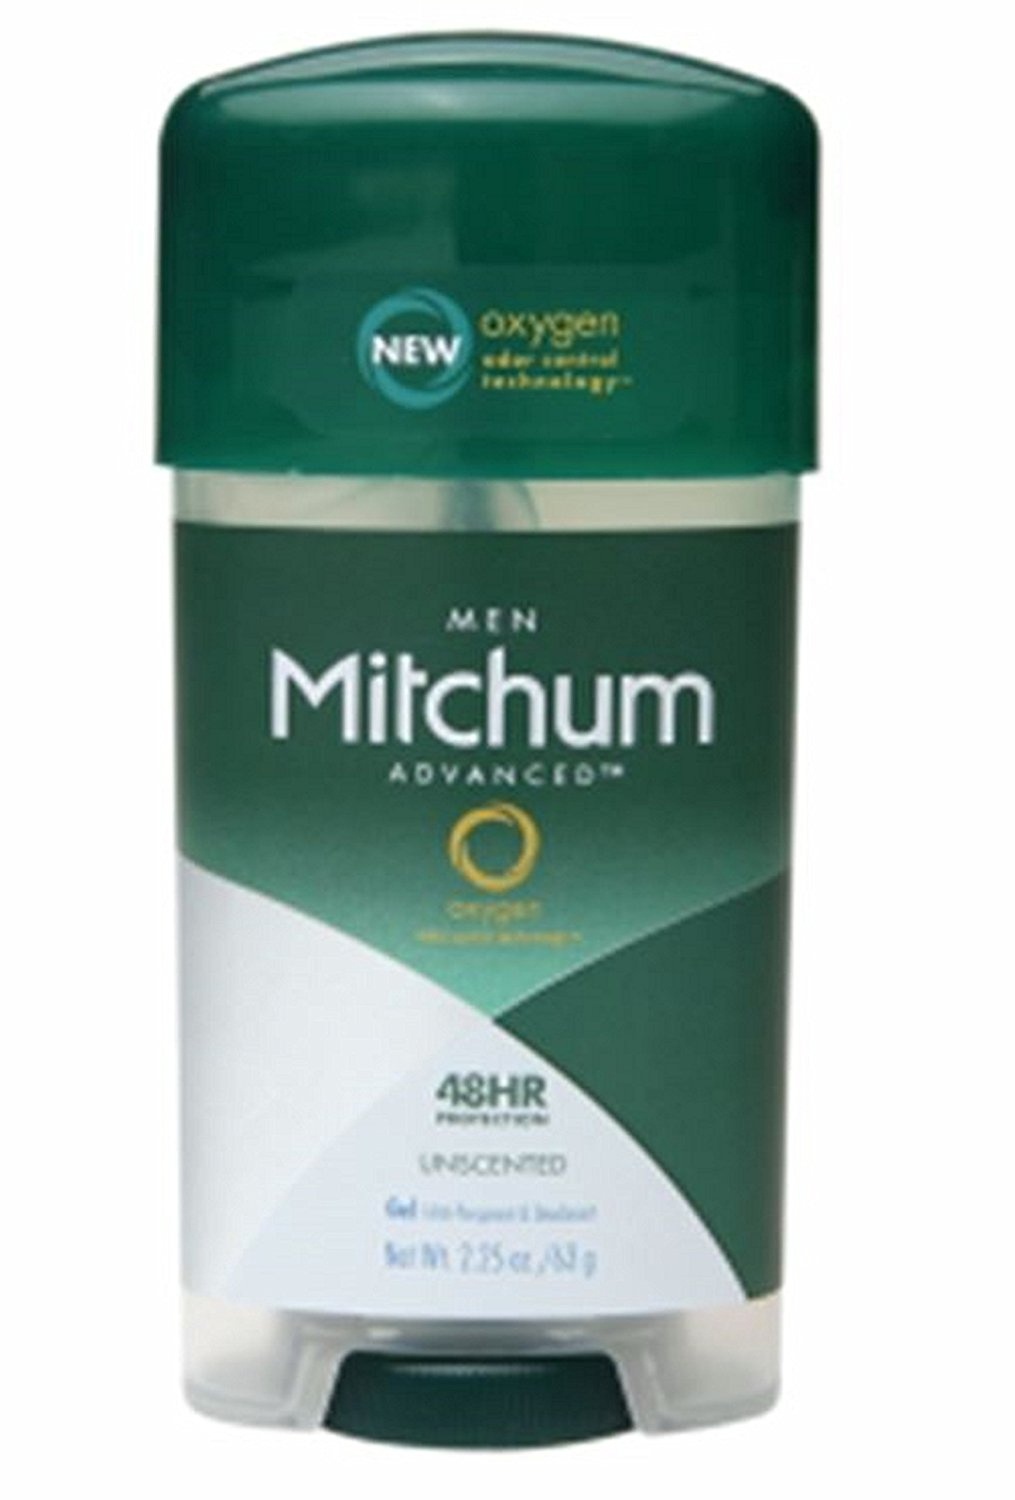 Mitchum Deodorant Only $0.99 @ Cvs! | Coupon Karma - Free Printable Coupons For Mitchum Deodorant